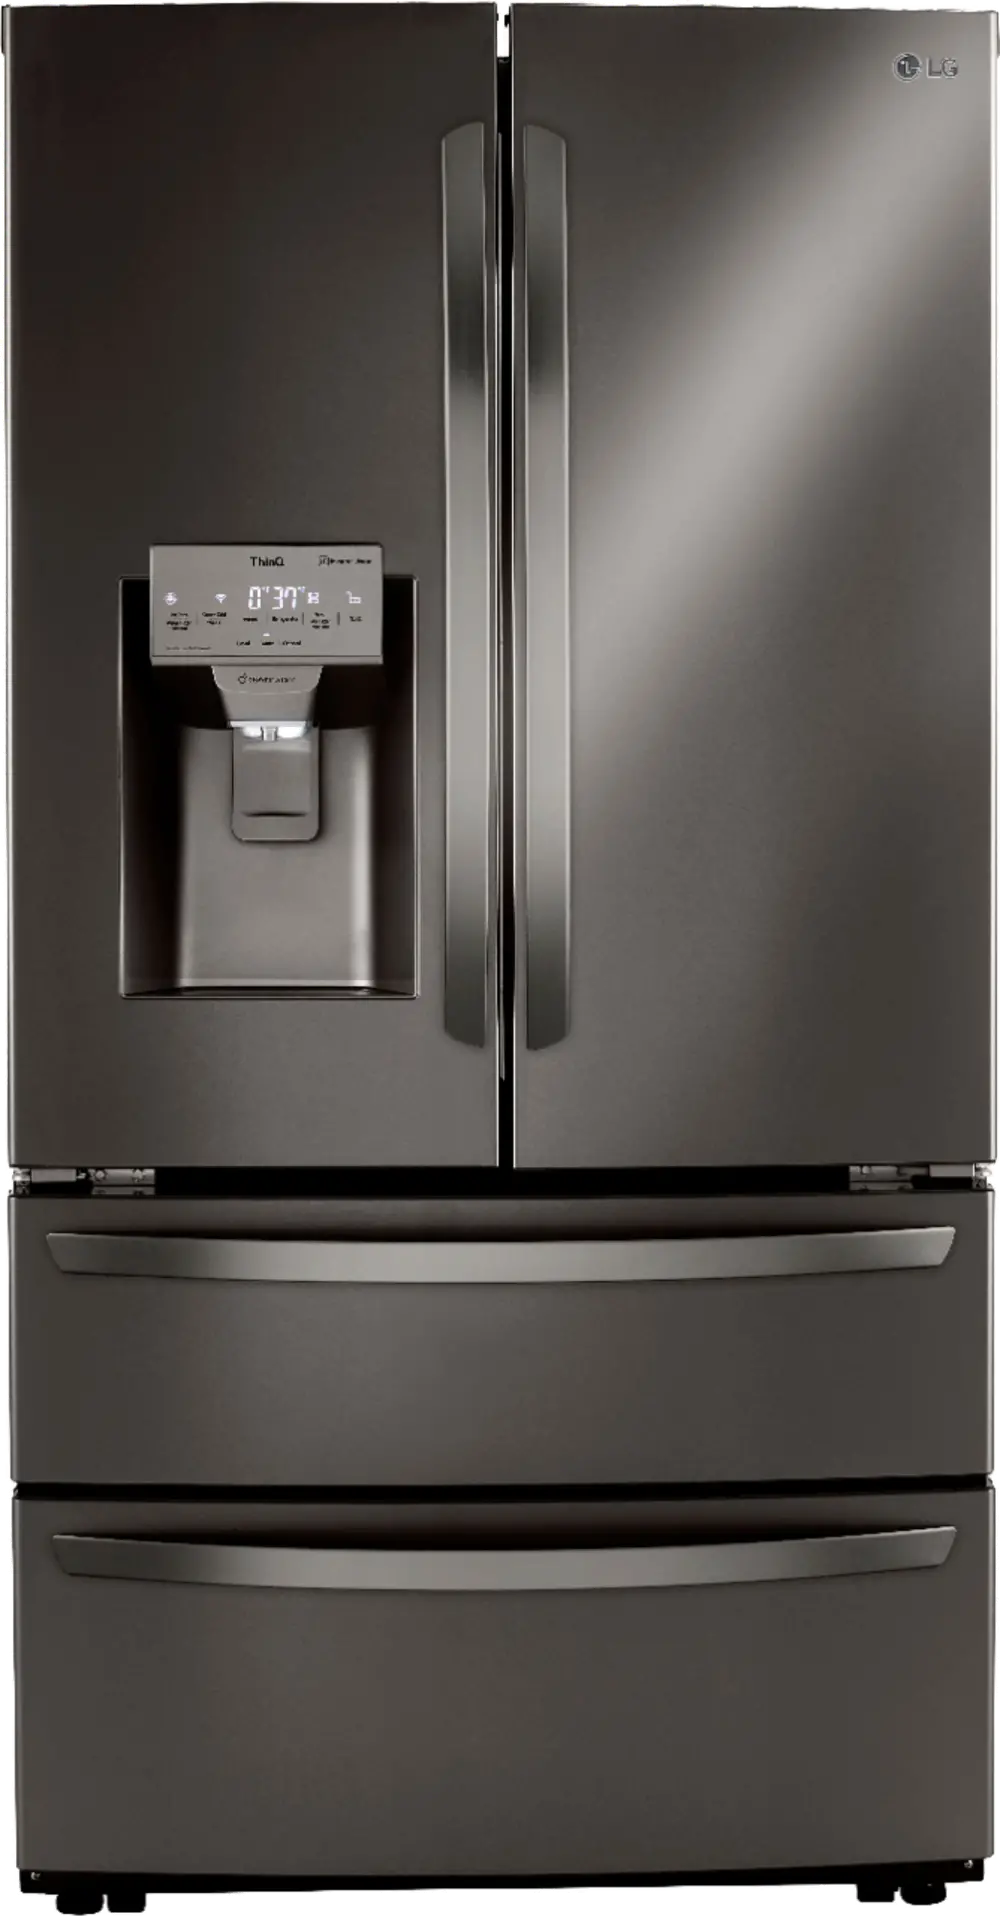 LRMXC2206D LG 22 cu ft 4 Door Refrigerator - Counter Depth Black Stainless Steel-1